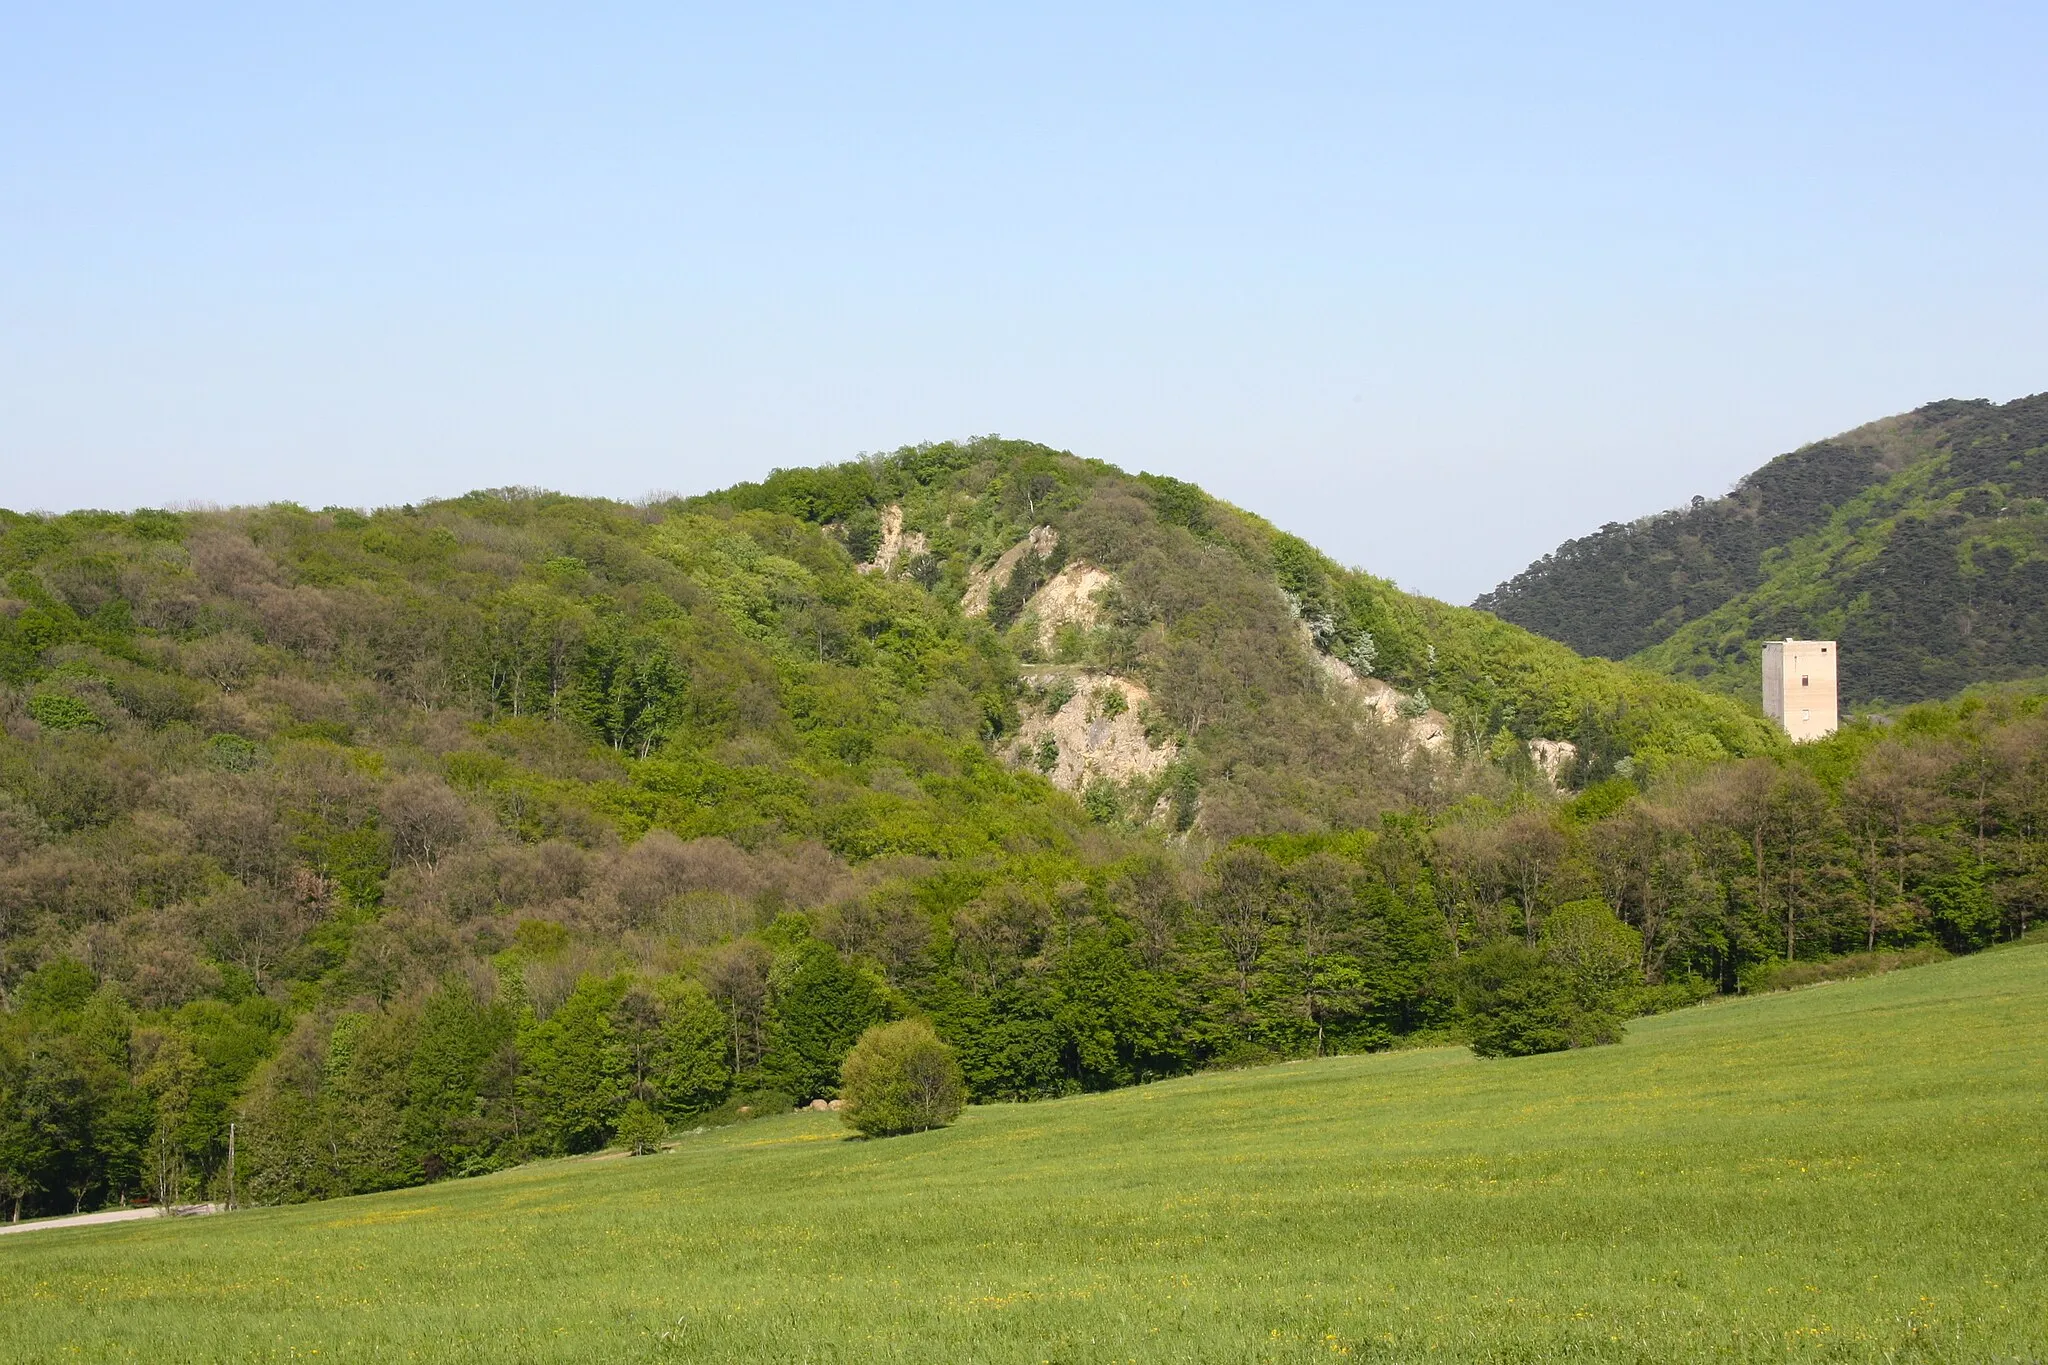 Photo showing: Eichkogel in Wien-Rodaun, Ansicht von Westen von der Wiese bei der Wiener Hütte in Kaltenleutgeben. Betonturm des Zementwerks Rodaun rechts unterhalb des Gipfels.